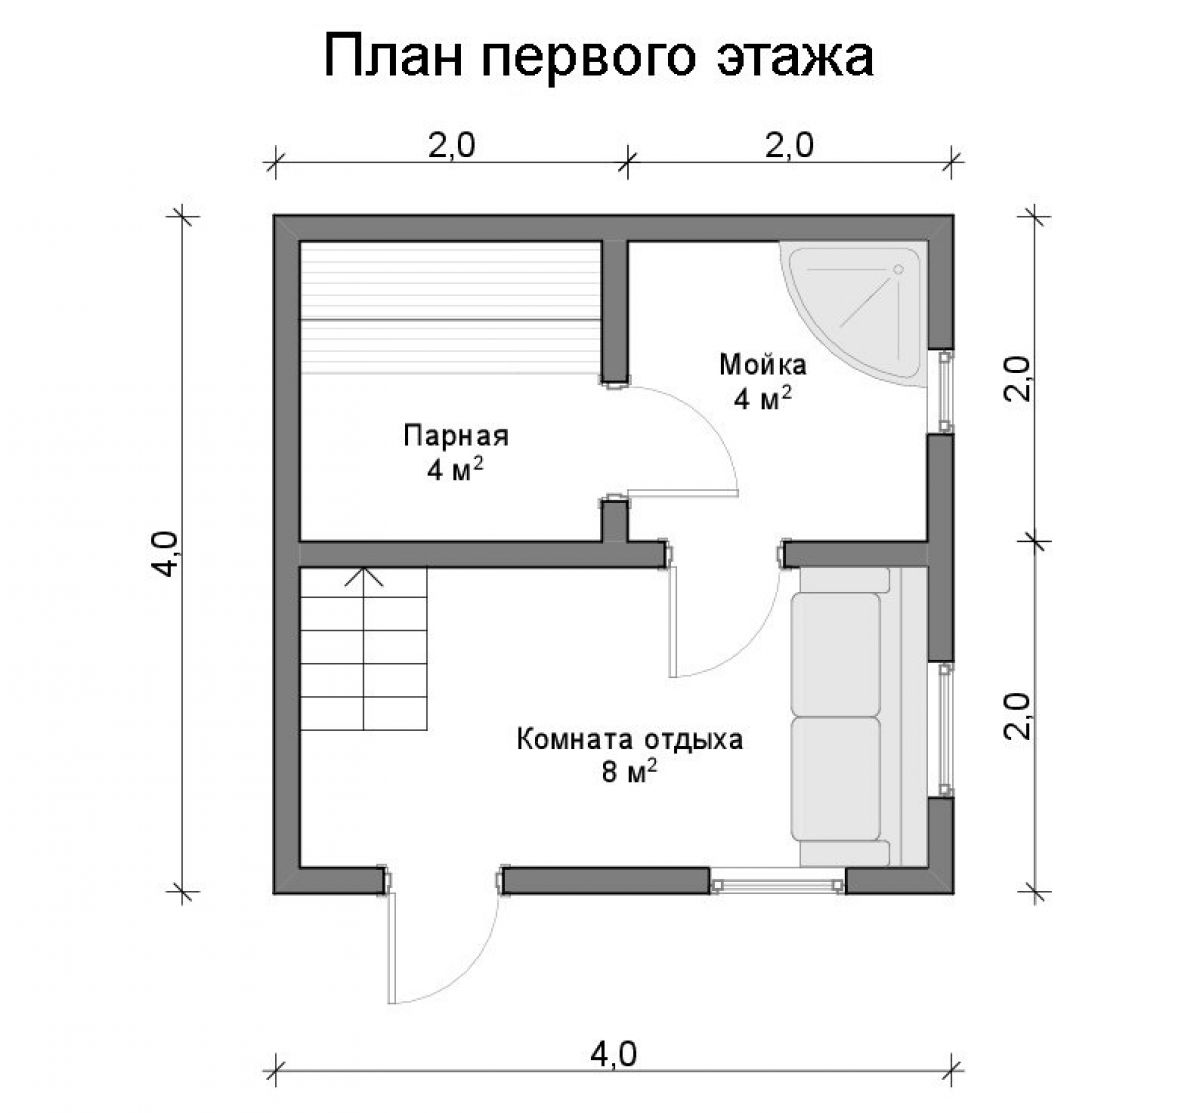 Баня 4х4 под ключ: проекты, планировки, цены на строительство в москве, фото